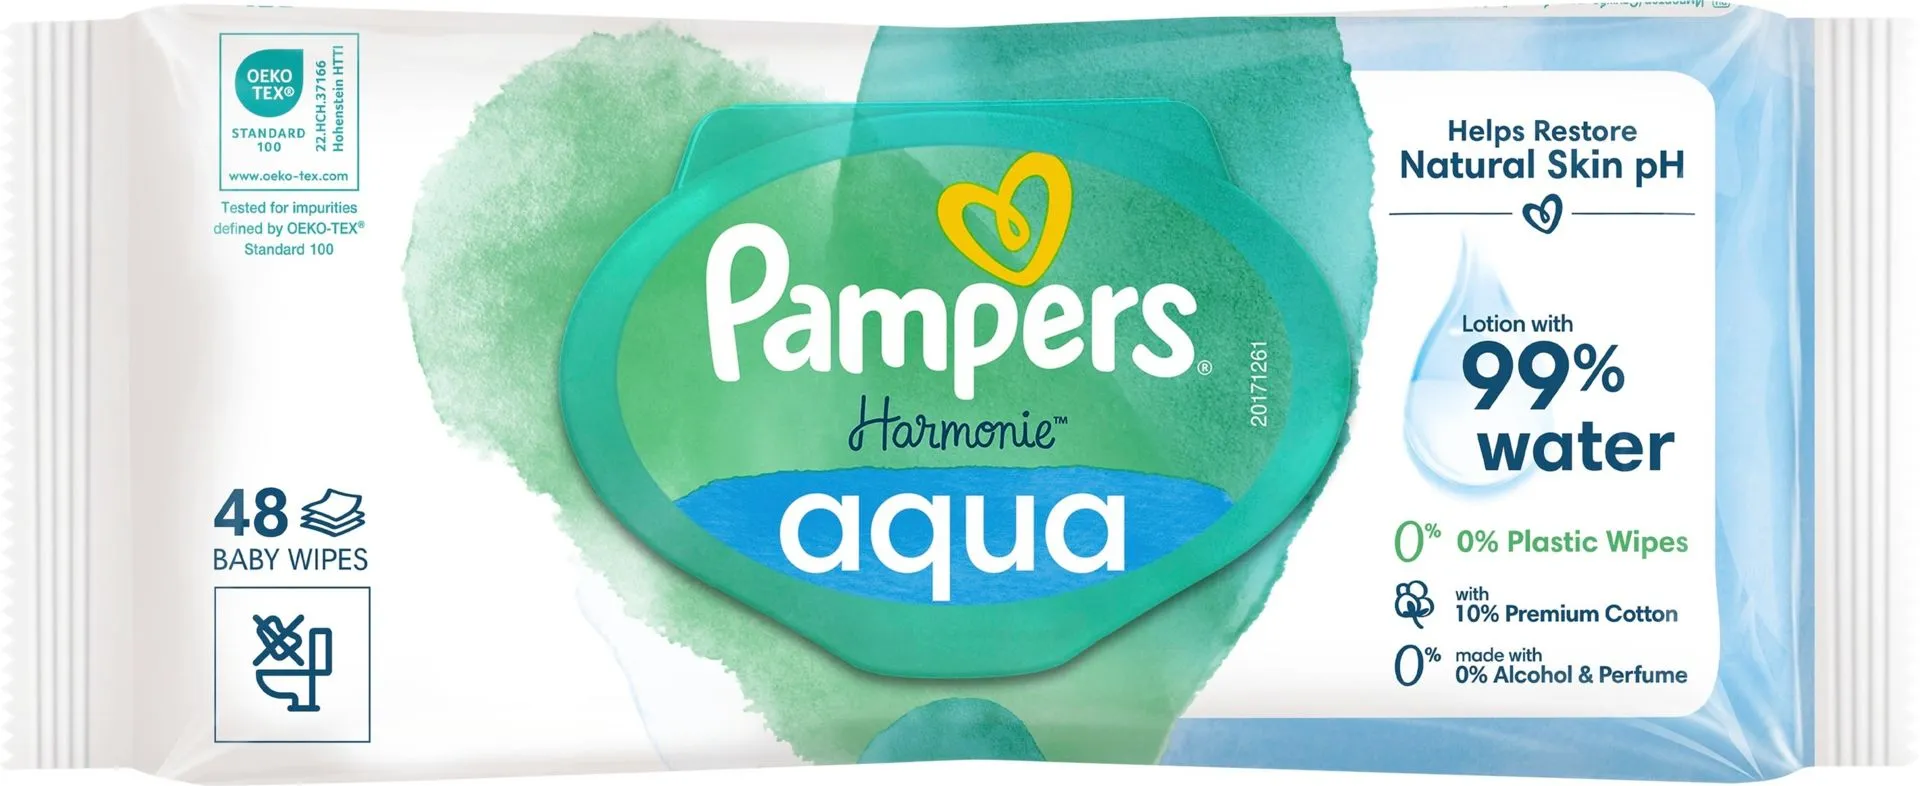 Pampers Harmonie Aqua 48kpl puhdistuspyyhe